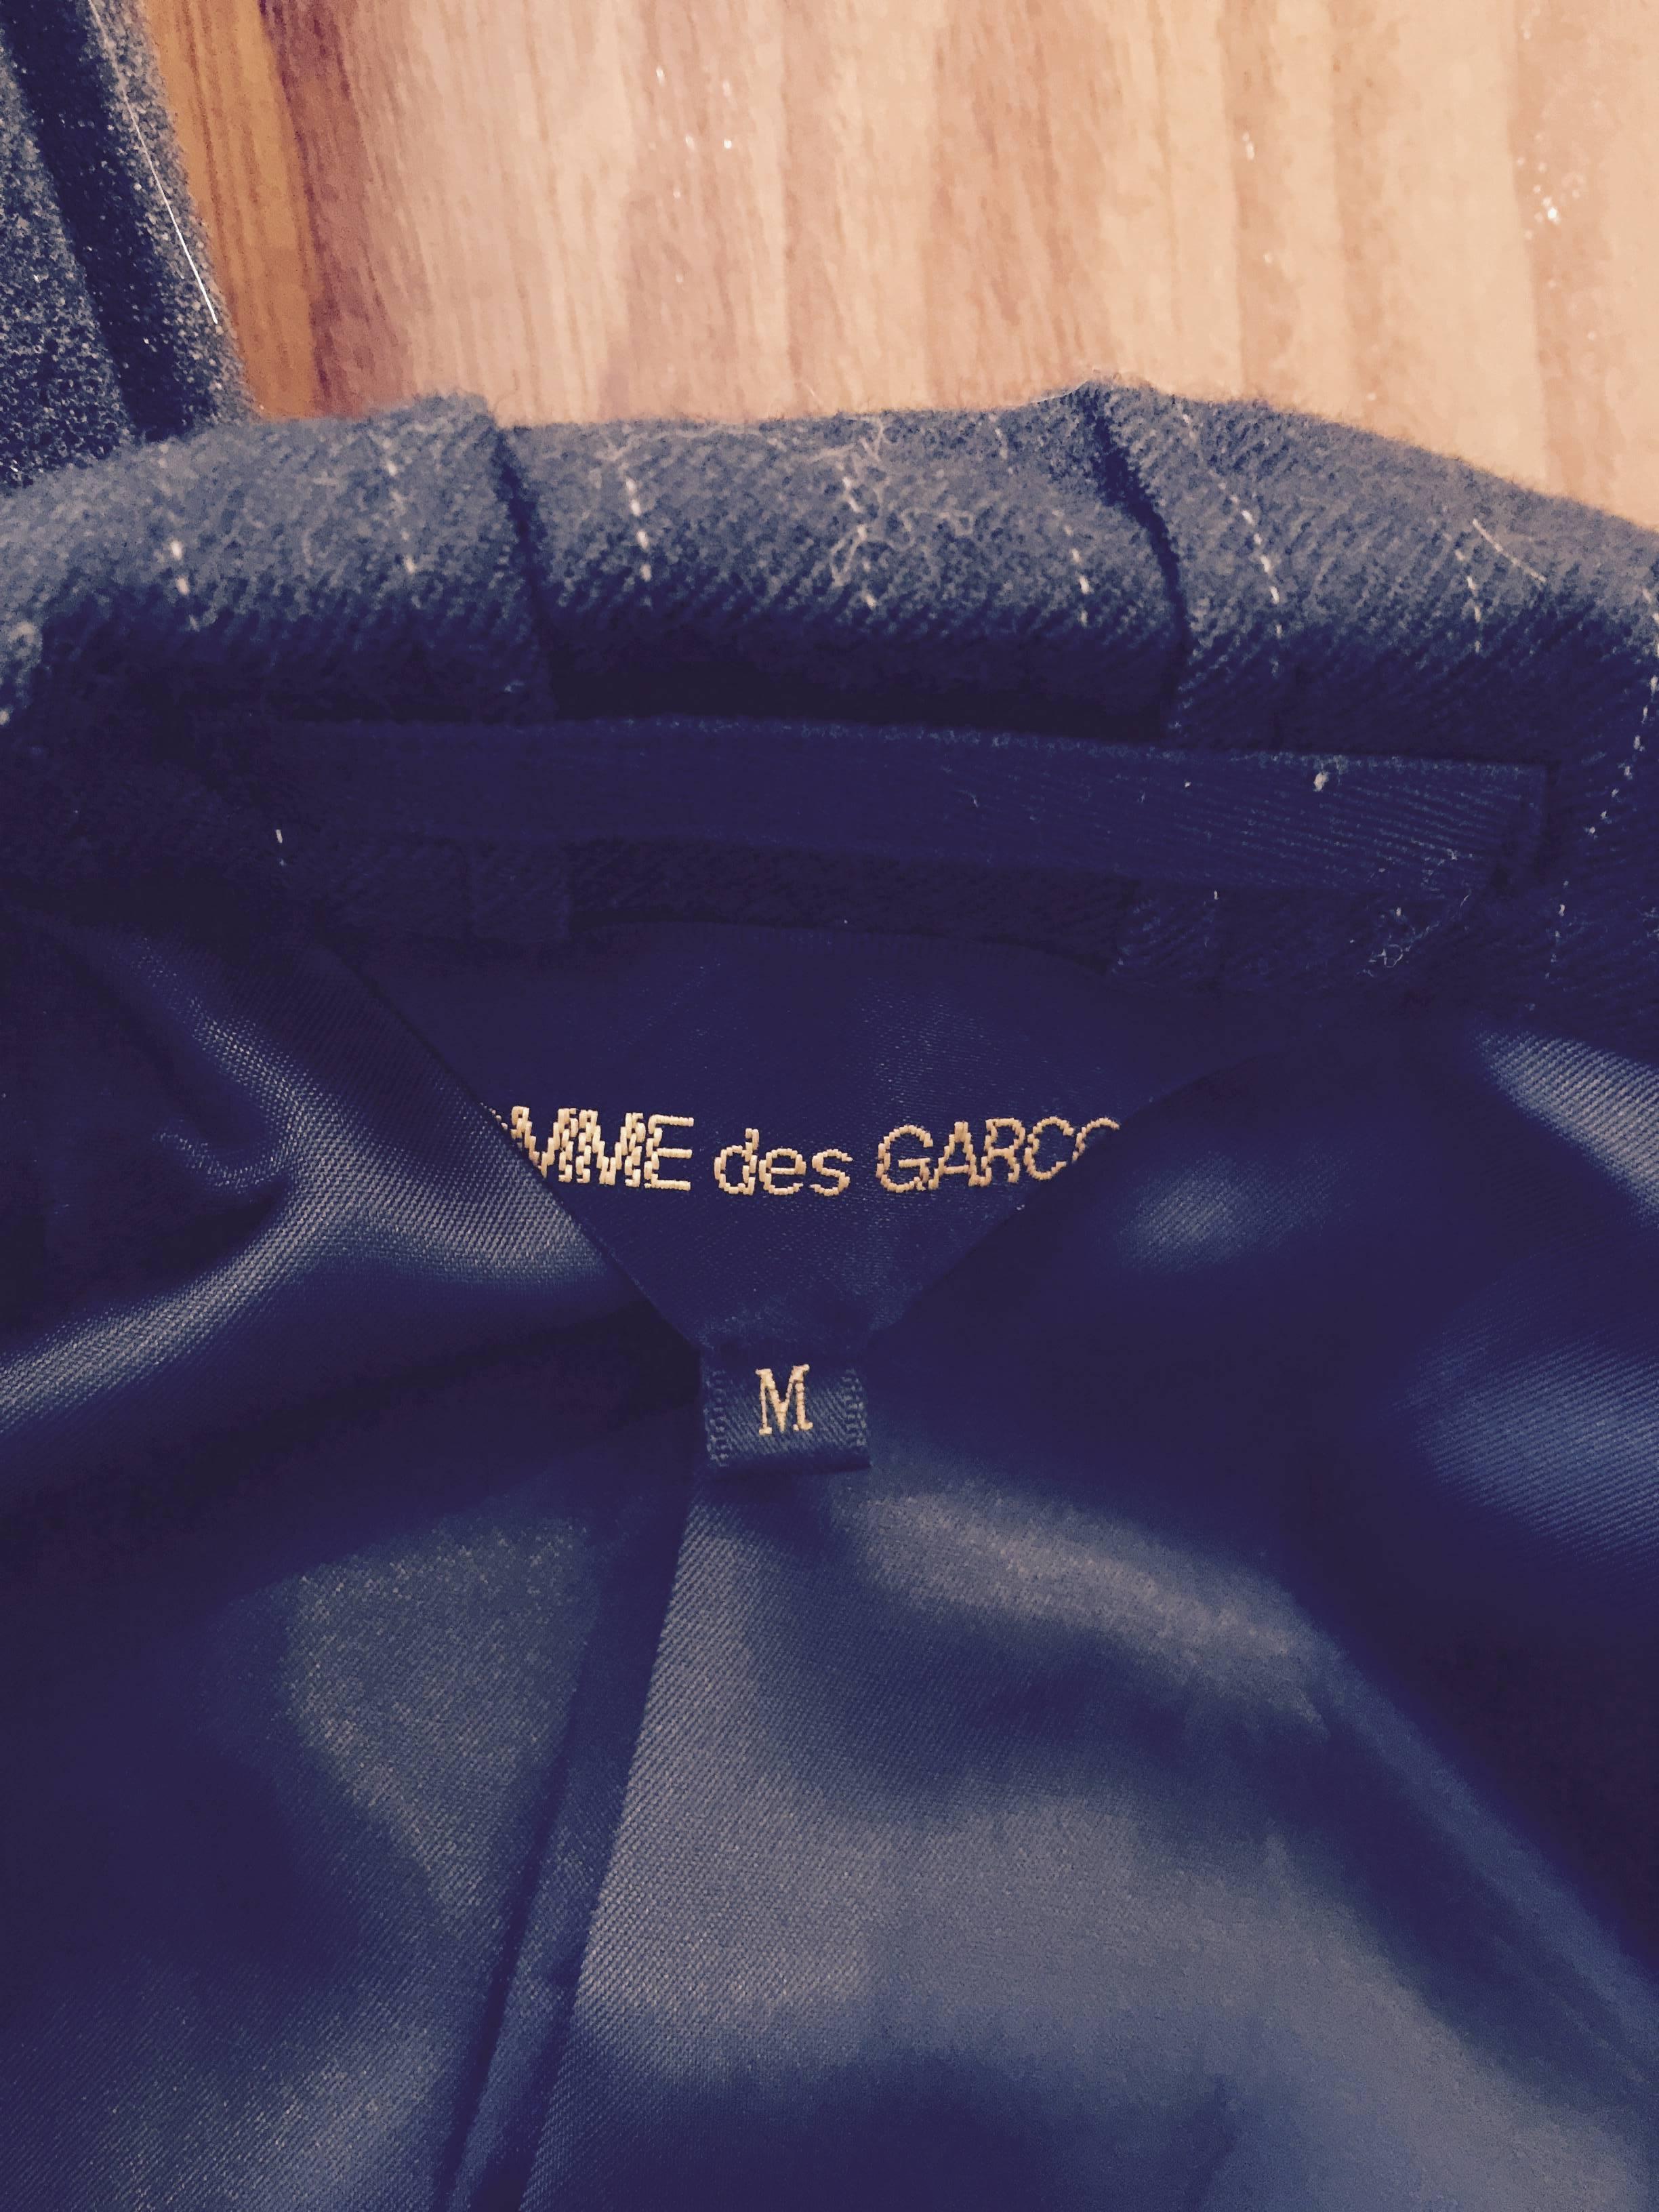 Pinstripe Comme des Garcons Jacket with Lace Details M. 2